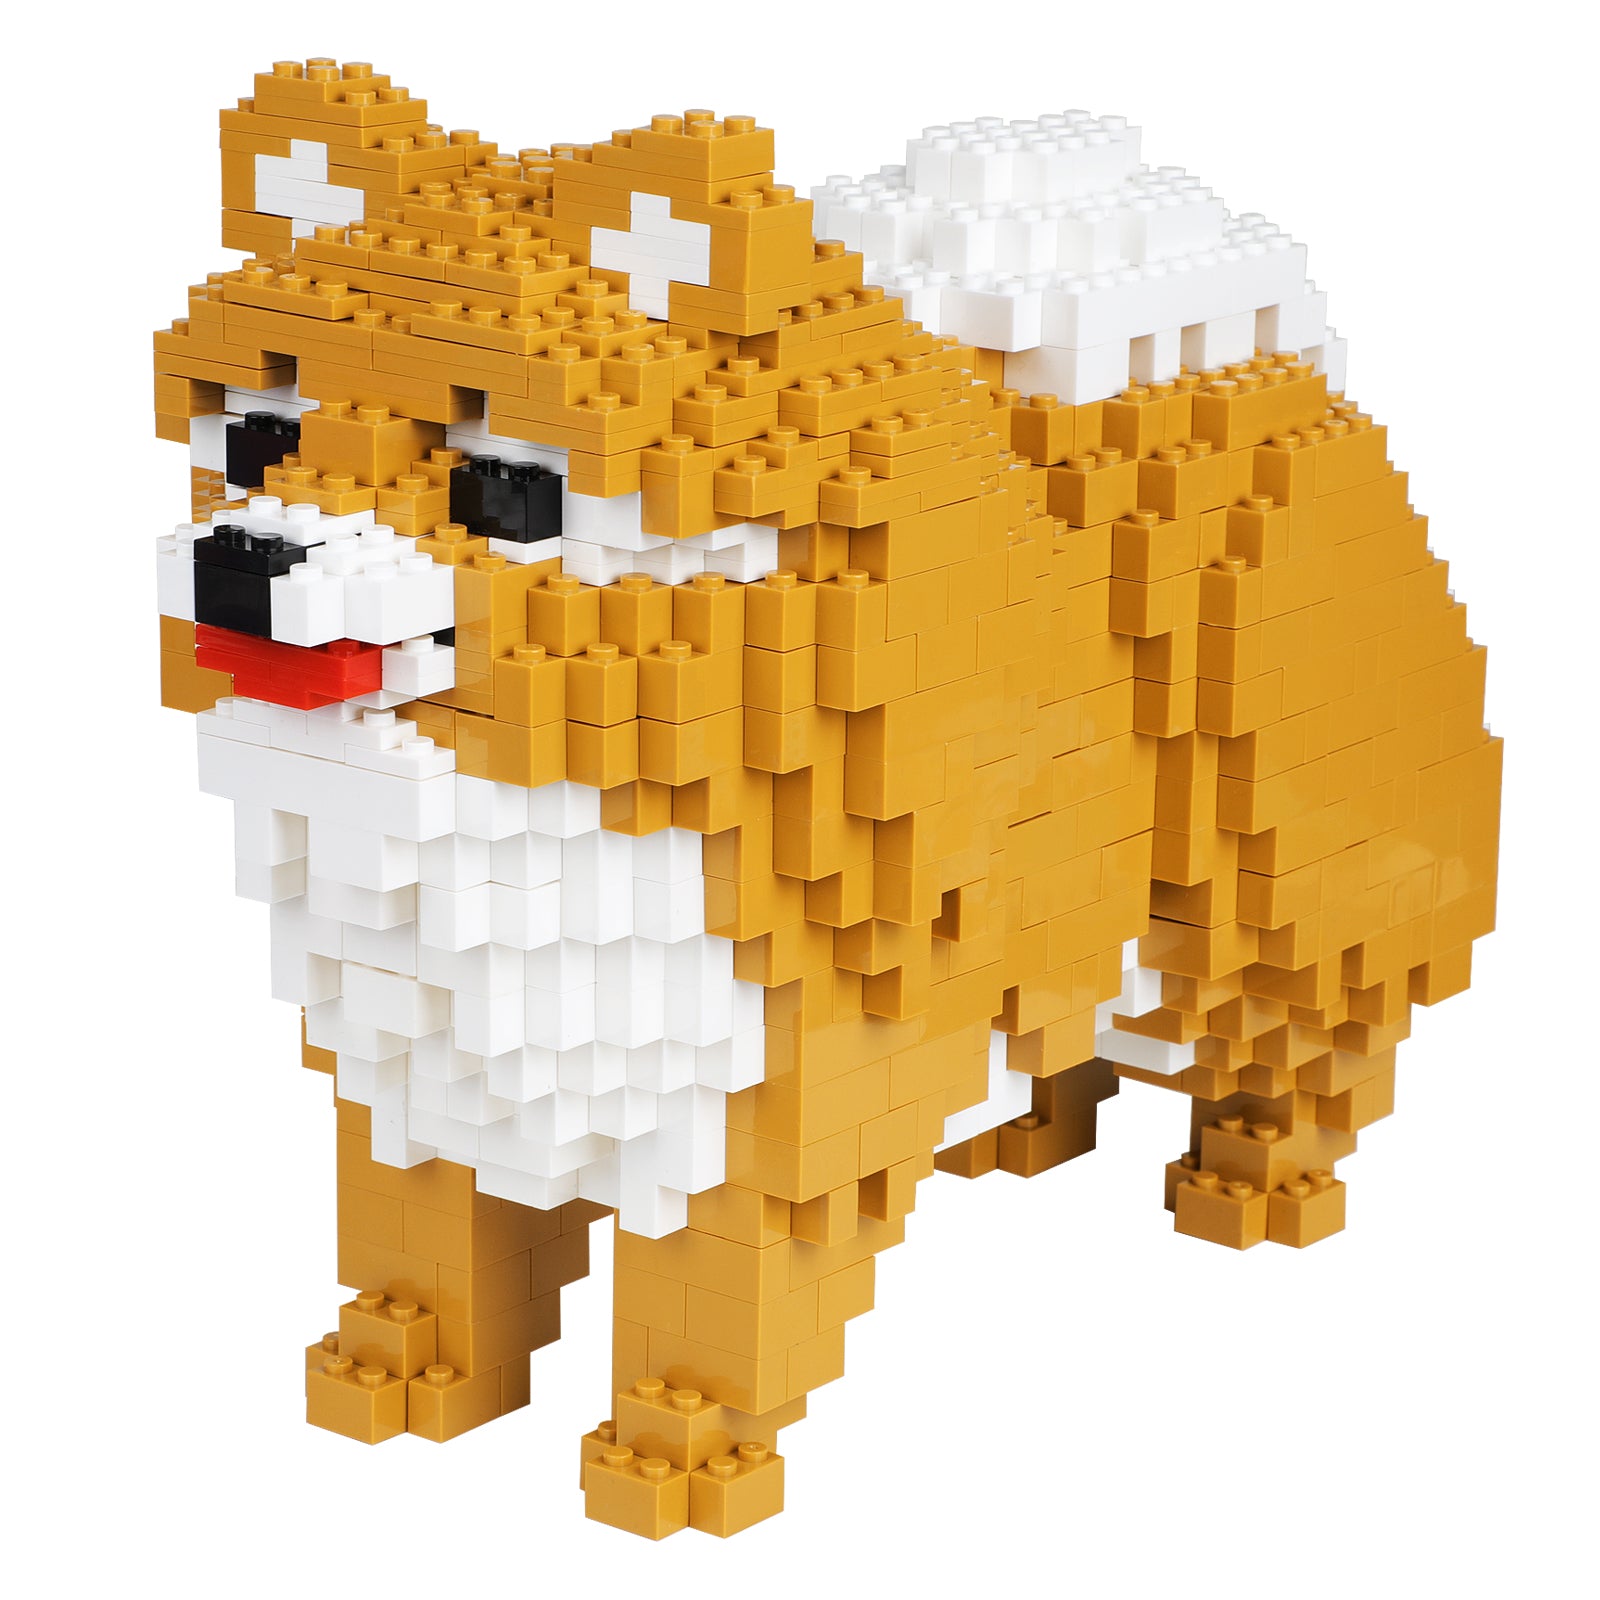 Pomeranian Dog Toy